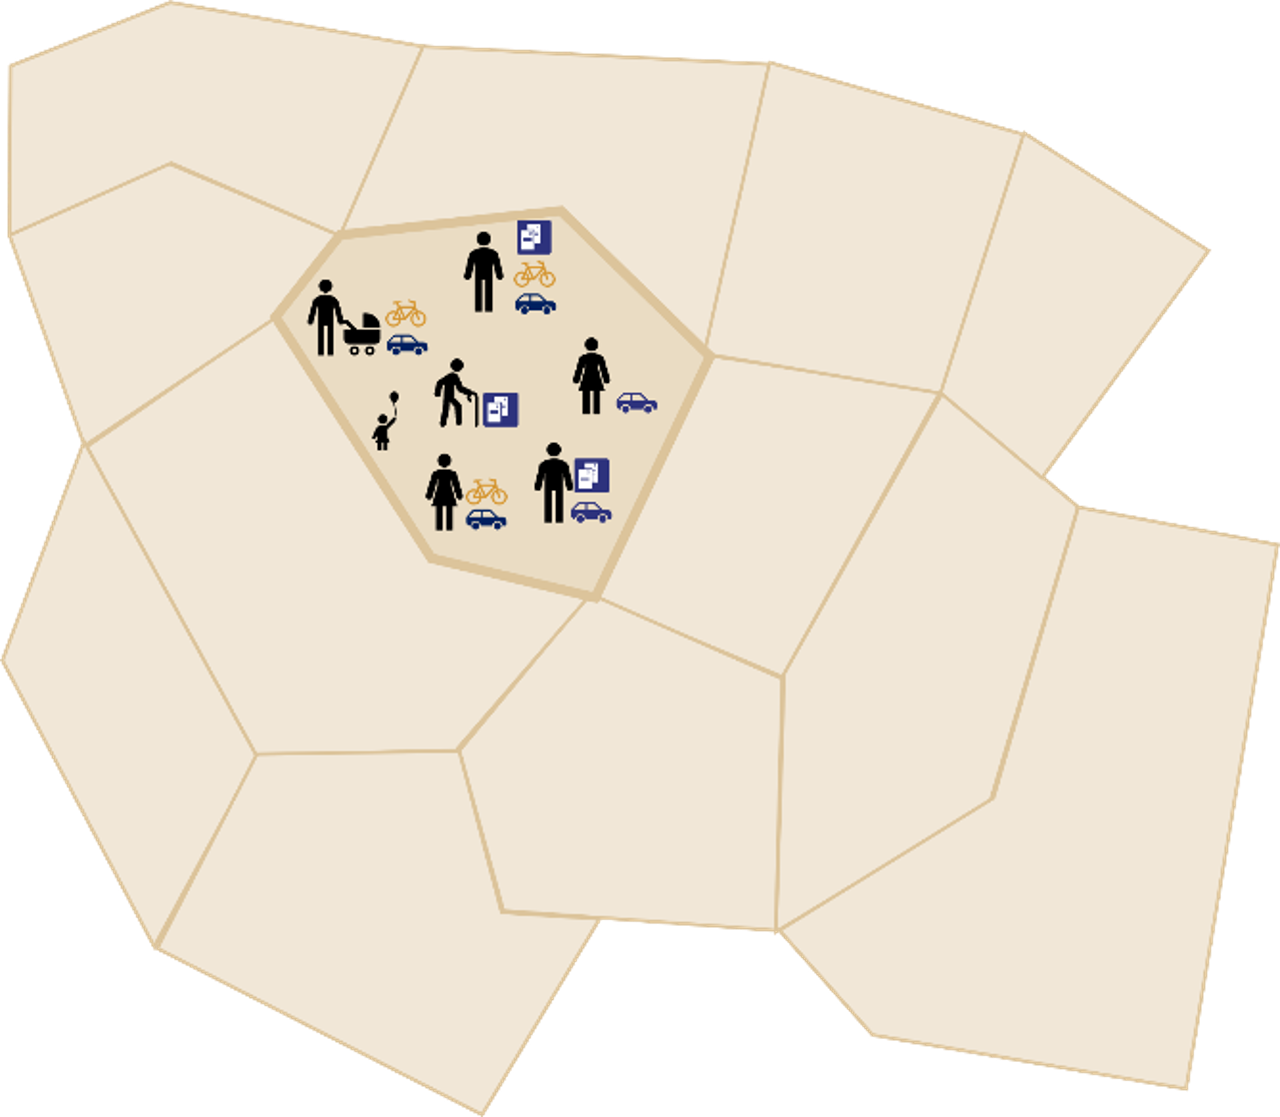 Eine grafische Darstellung einer Region, in der verschiedene Menschen durch Aktivitäten Verkehr erzeugen.